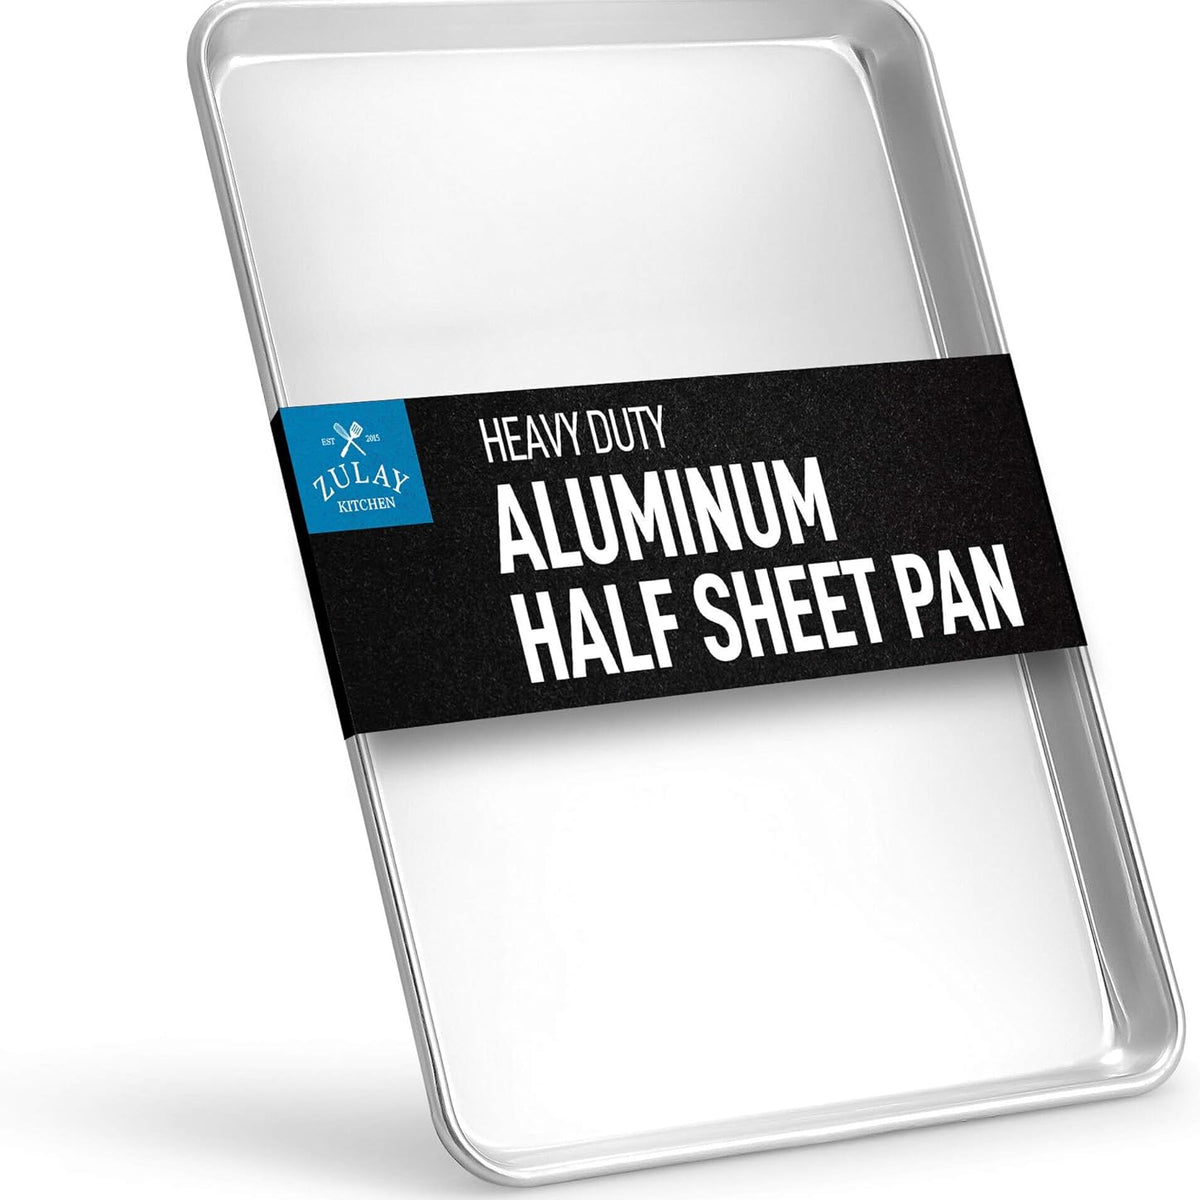 Aluminum Cookie Sheet, 16x12, deBuyer – La Cuisine